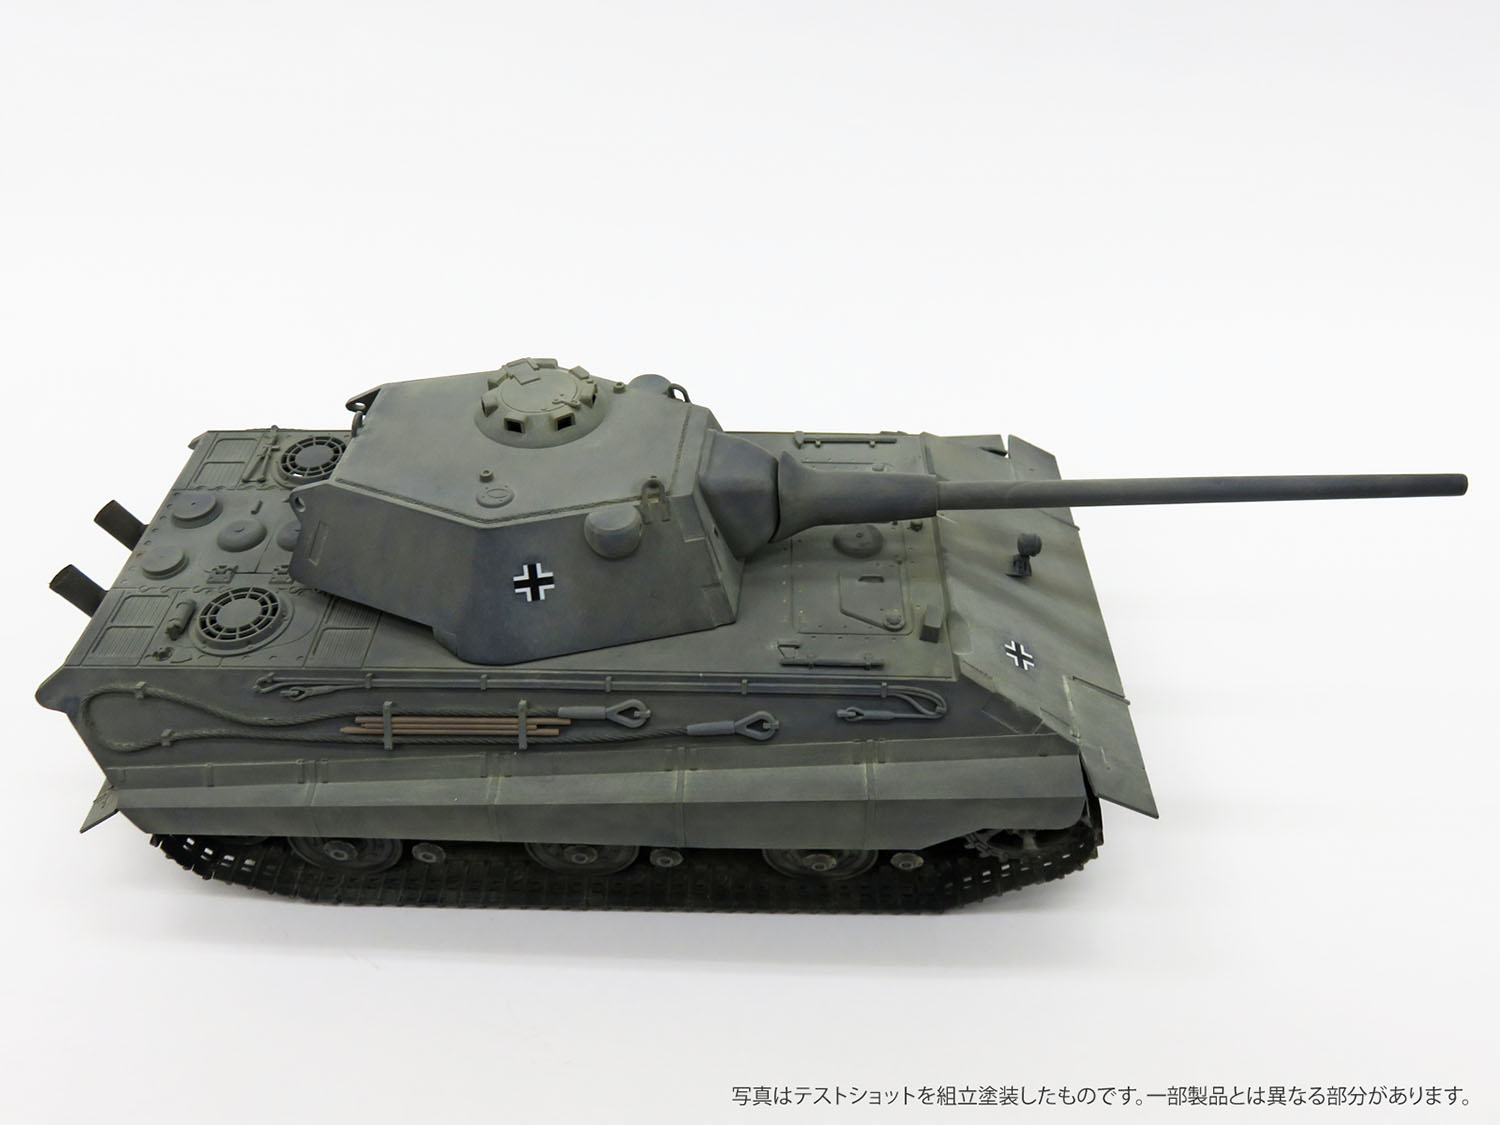 1/35 ドイツ軍 E-50 Ausf.B 10.5cm KwK L/52 パンターⅢ タムタムオンラインショップ札幌店 通販 ミリタリーモデル